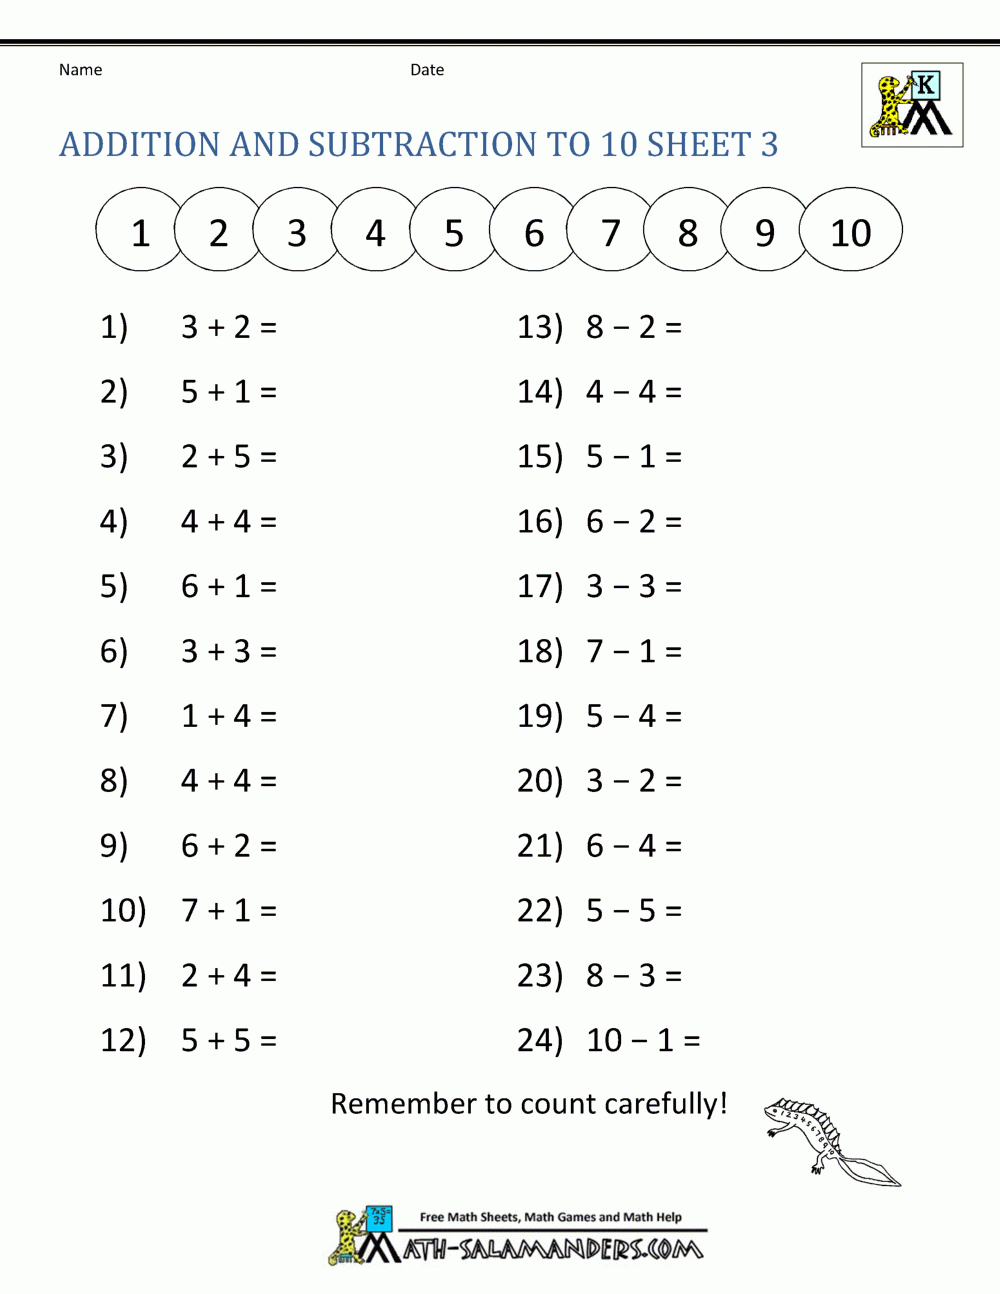 Kindergarten Addition And Subtraction Worksheets intended for Free Printable Kindergarten Addition and Subtraction Worksheets